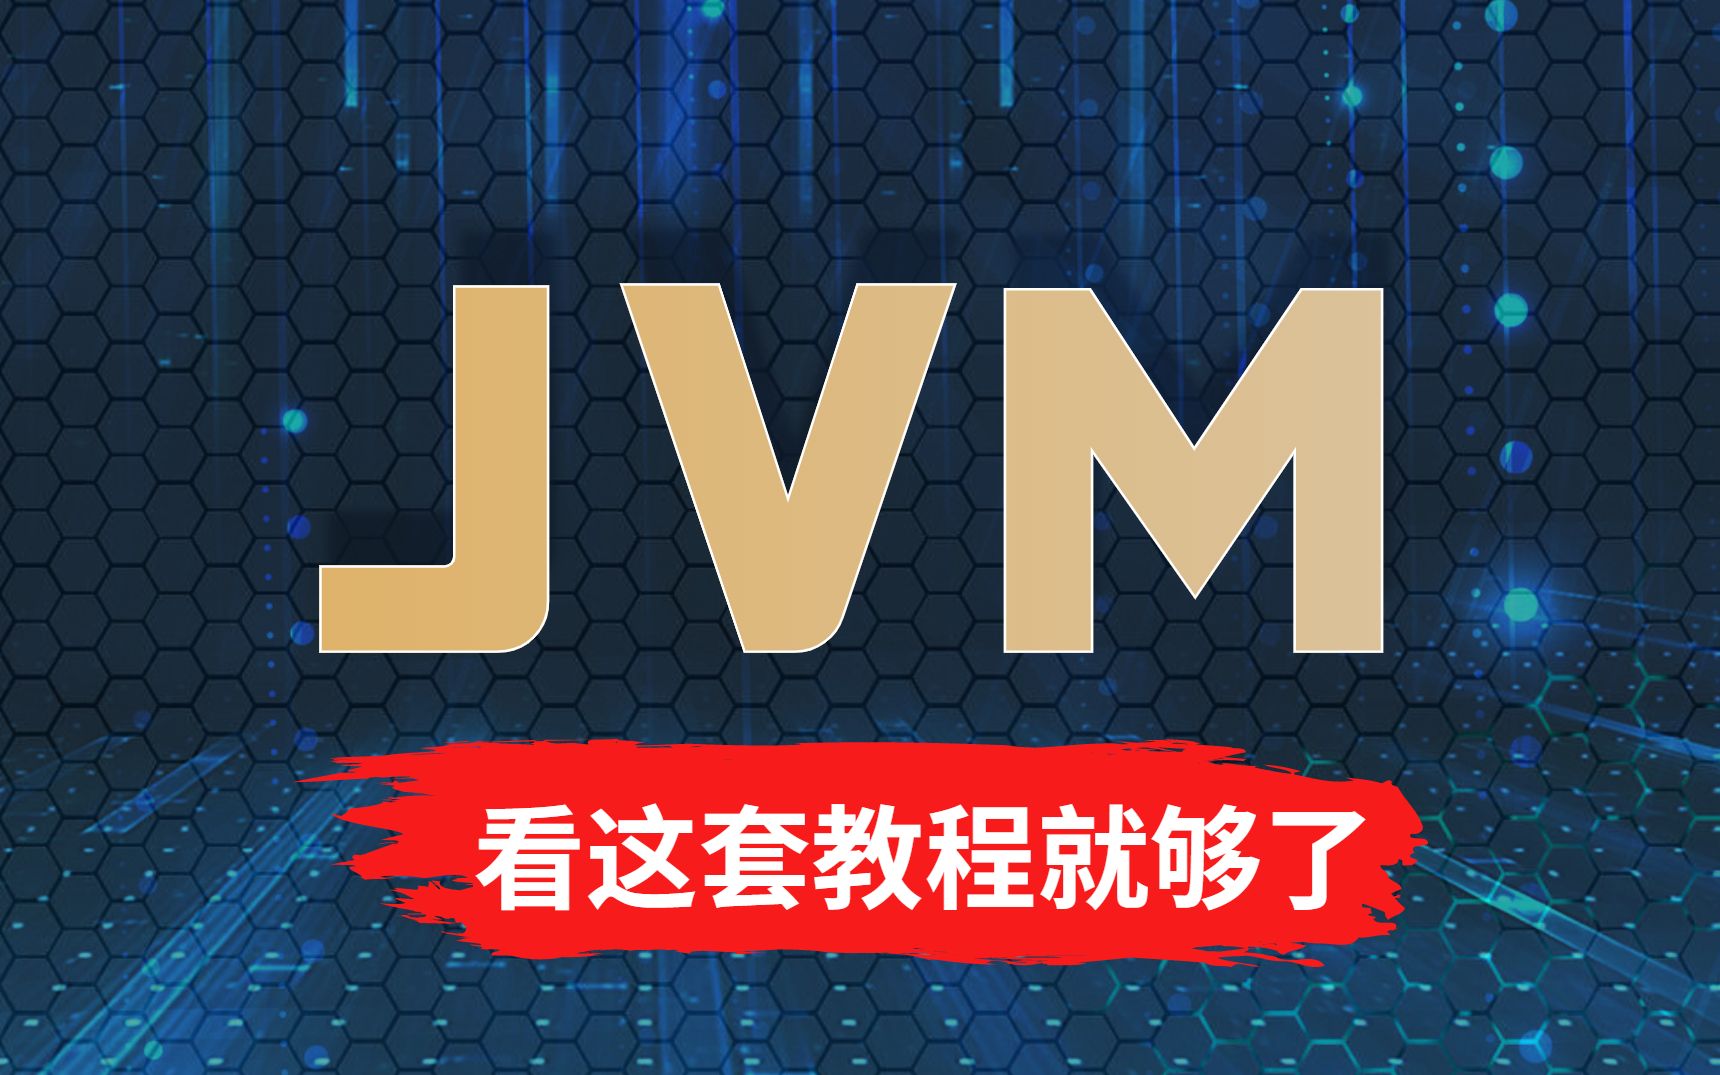 全网播放百万的全干货JVM教程来了！JAVA内存模型/JVM垃圾回收/双亲委派机制/Java类加载机制/JVM性能调优都在这里了